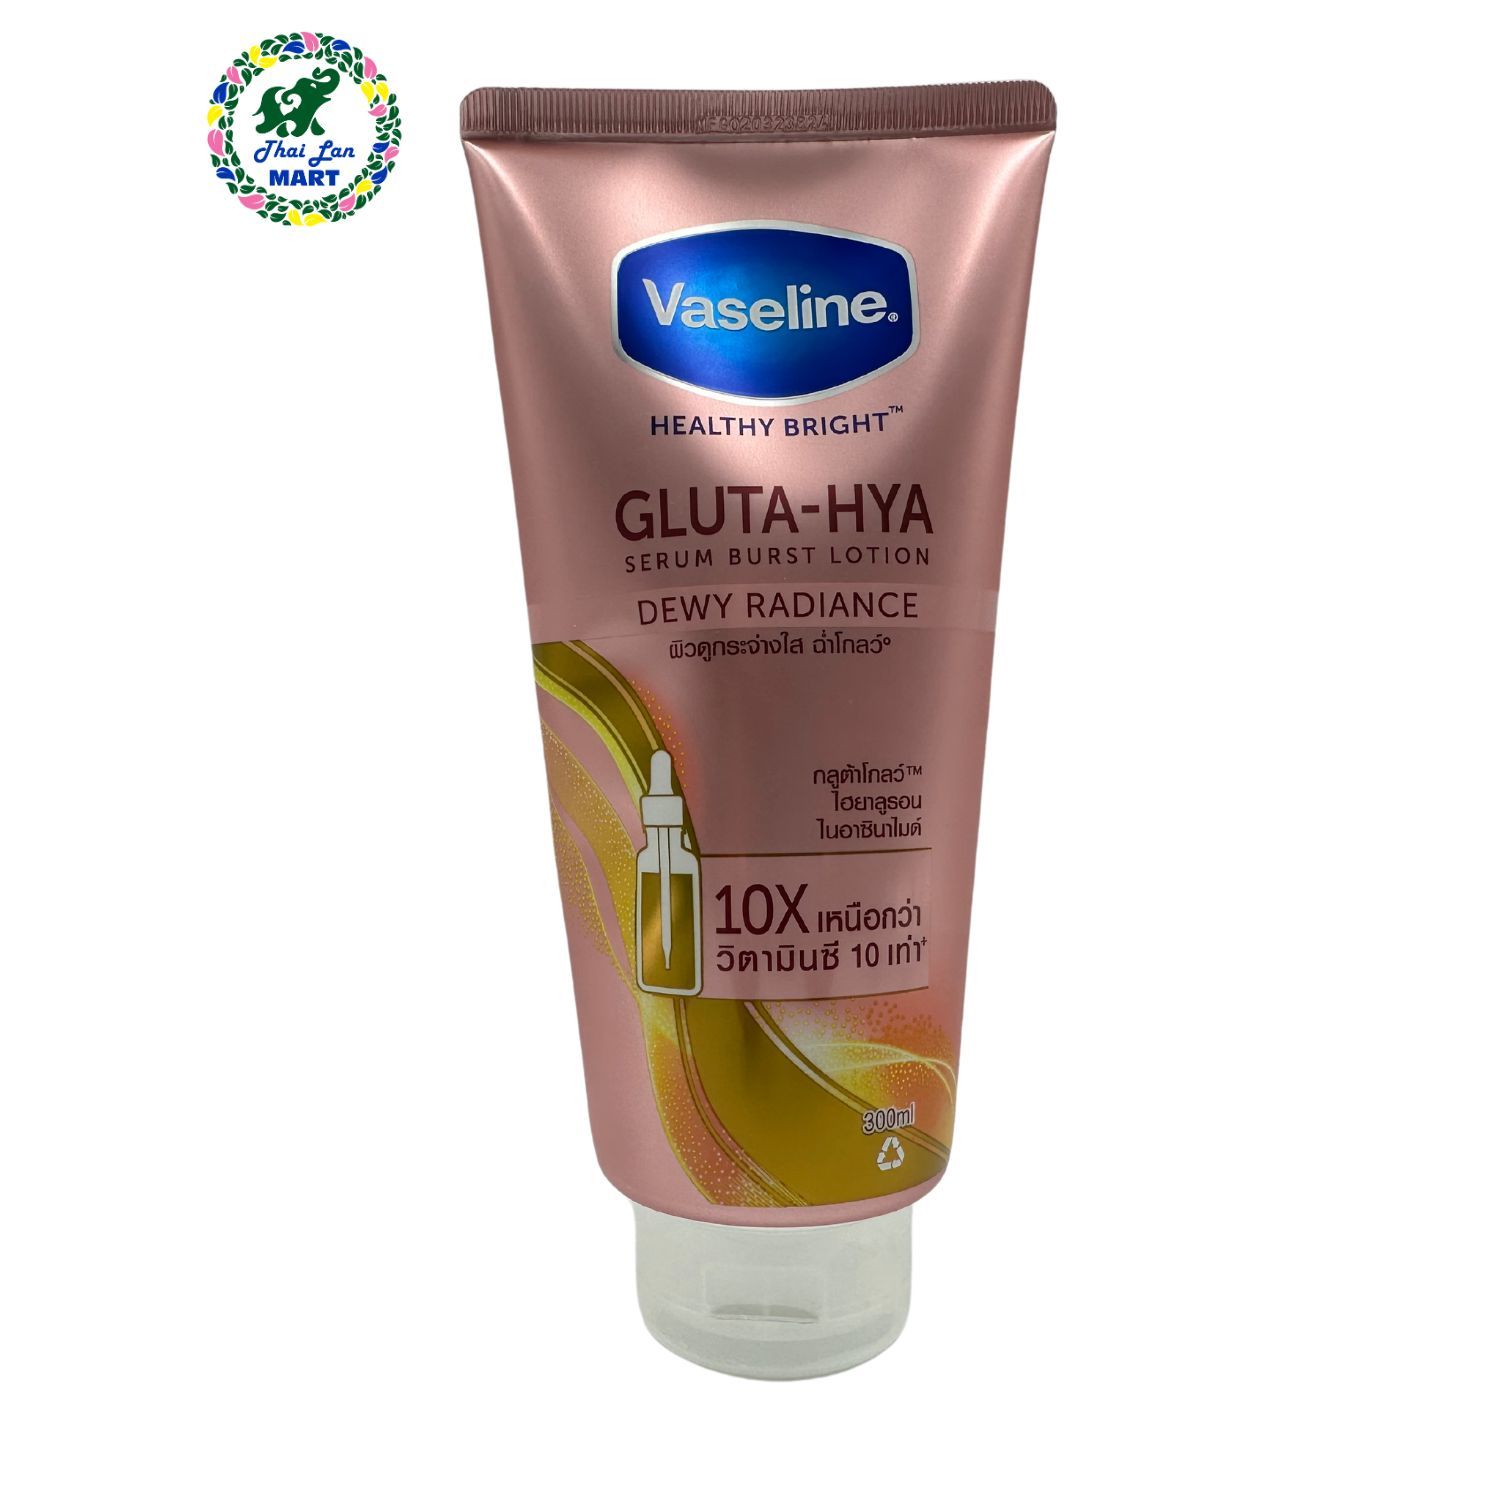  Sữa dưỡng thể vaseline healthy bright gluta hya serum burst lotion hàng nội địa chính hãng thái lan 